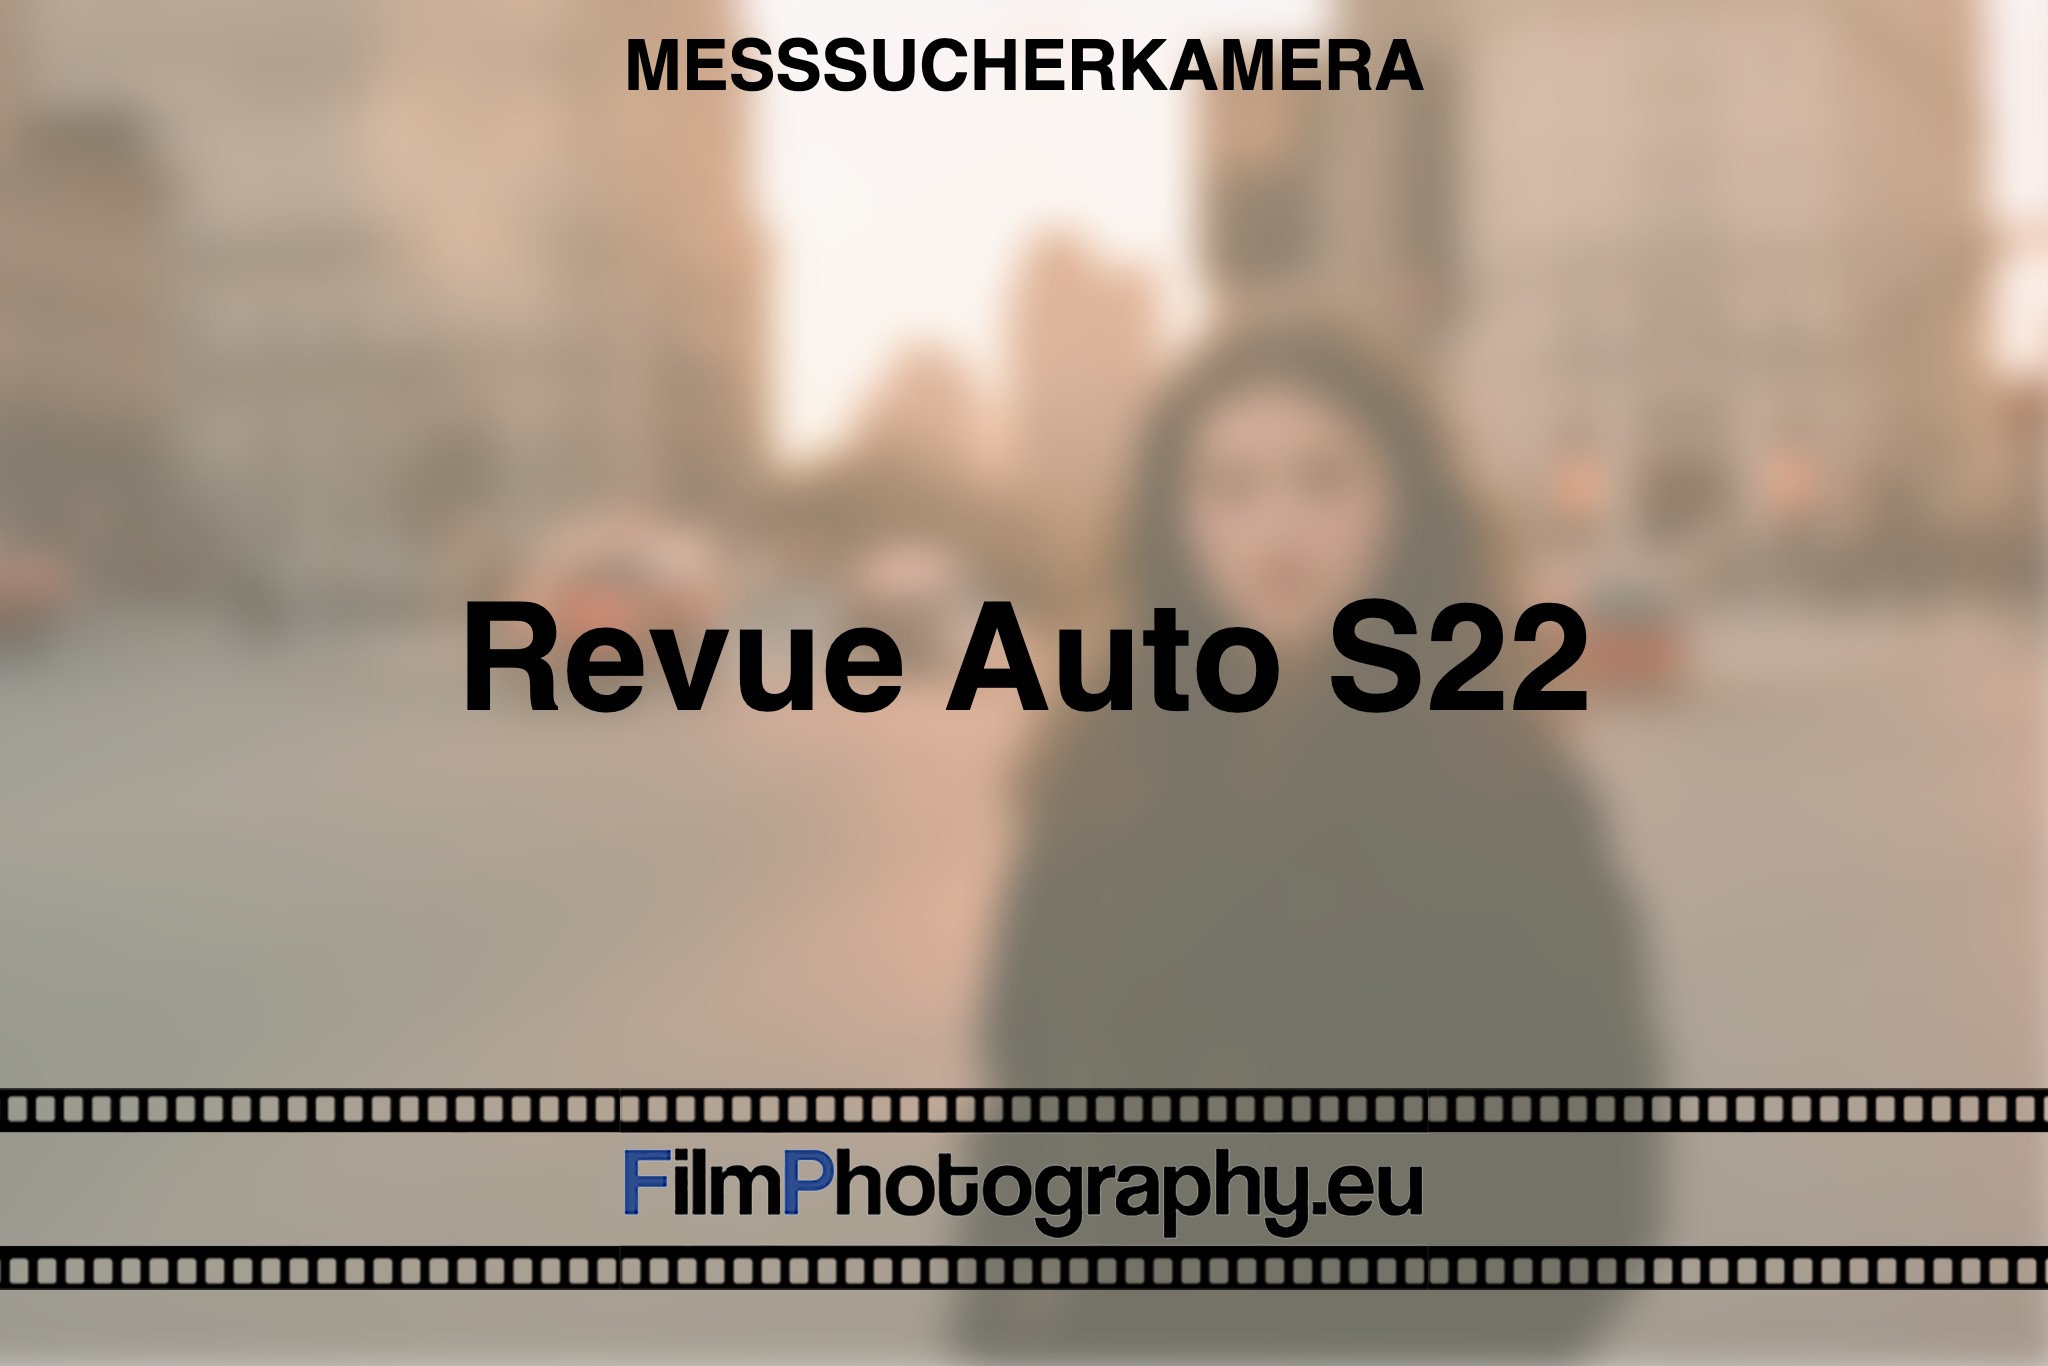 revue-auto-s22-messsucherkamera-bnv